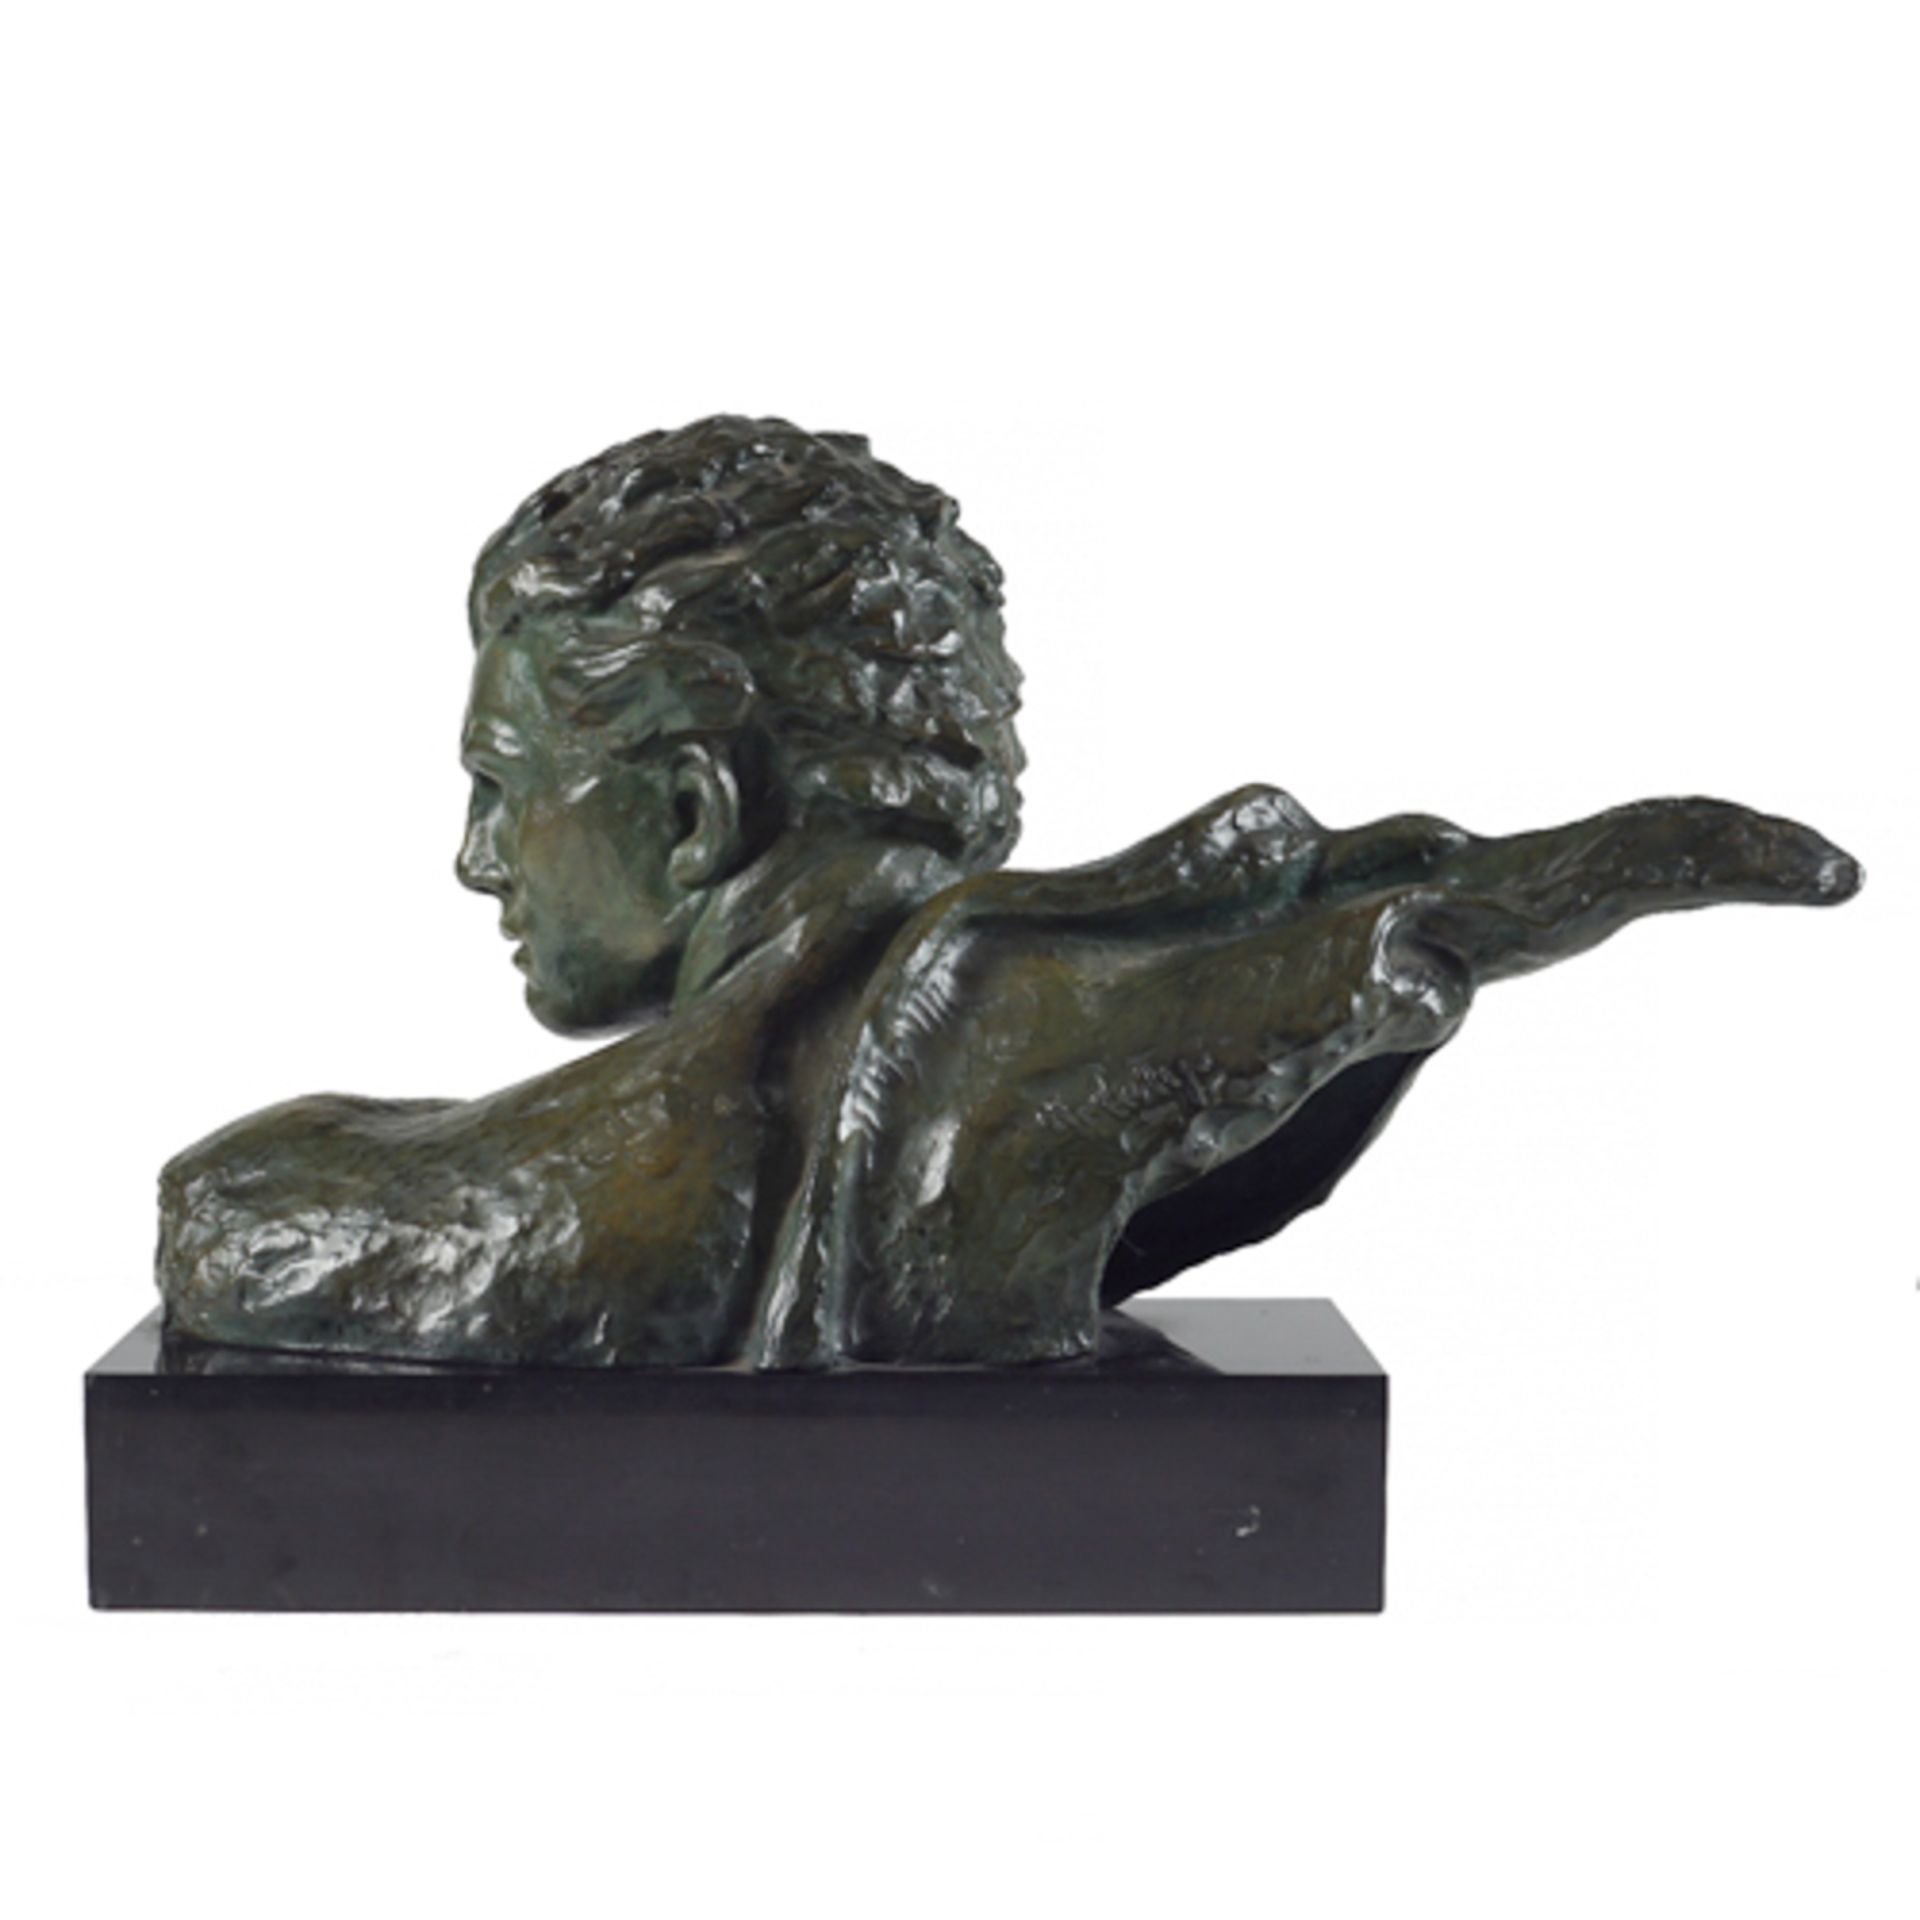 Alexander Kelety Ungheria, 1874 - 1940 bronze 29x54x22 cm. - Image 3 of 4